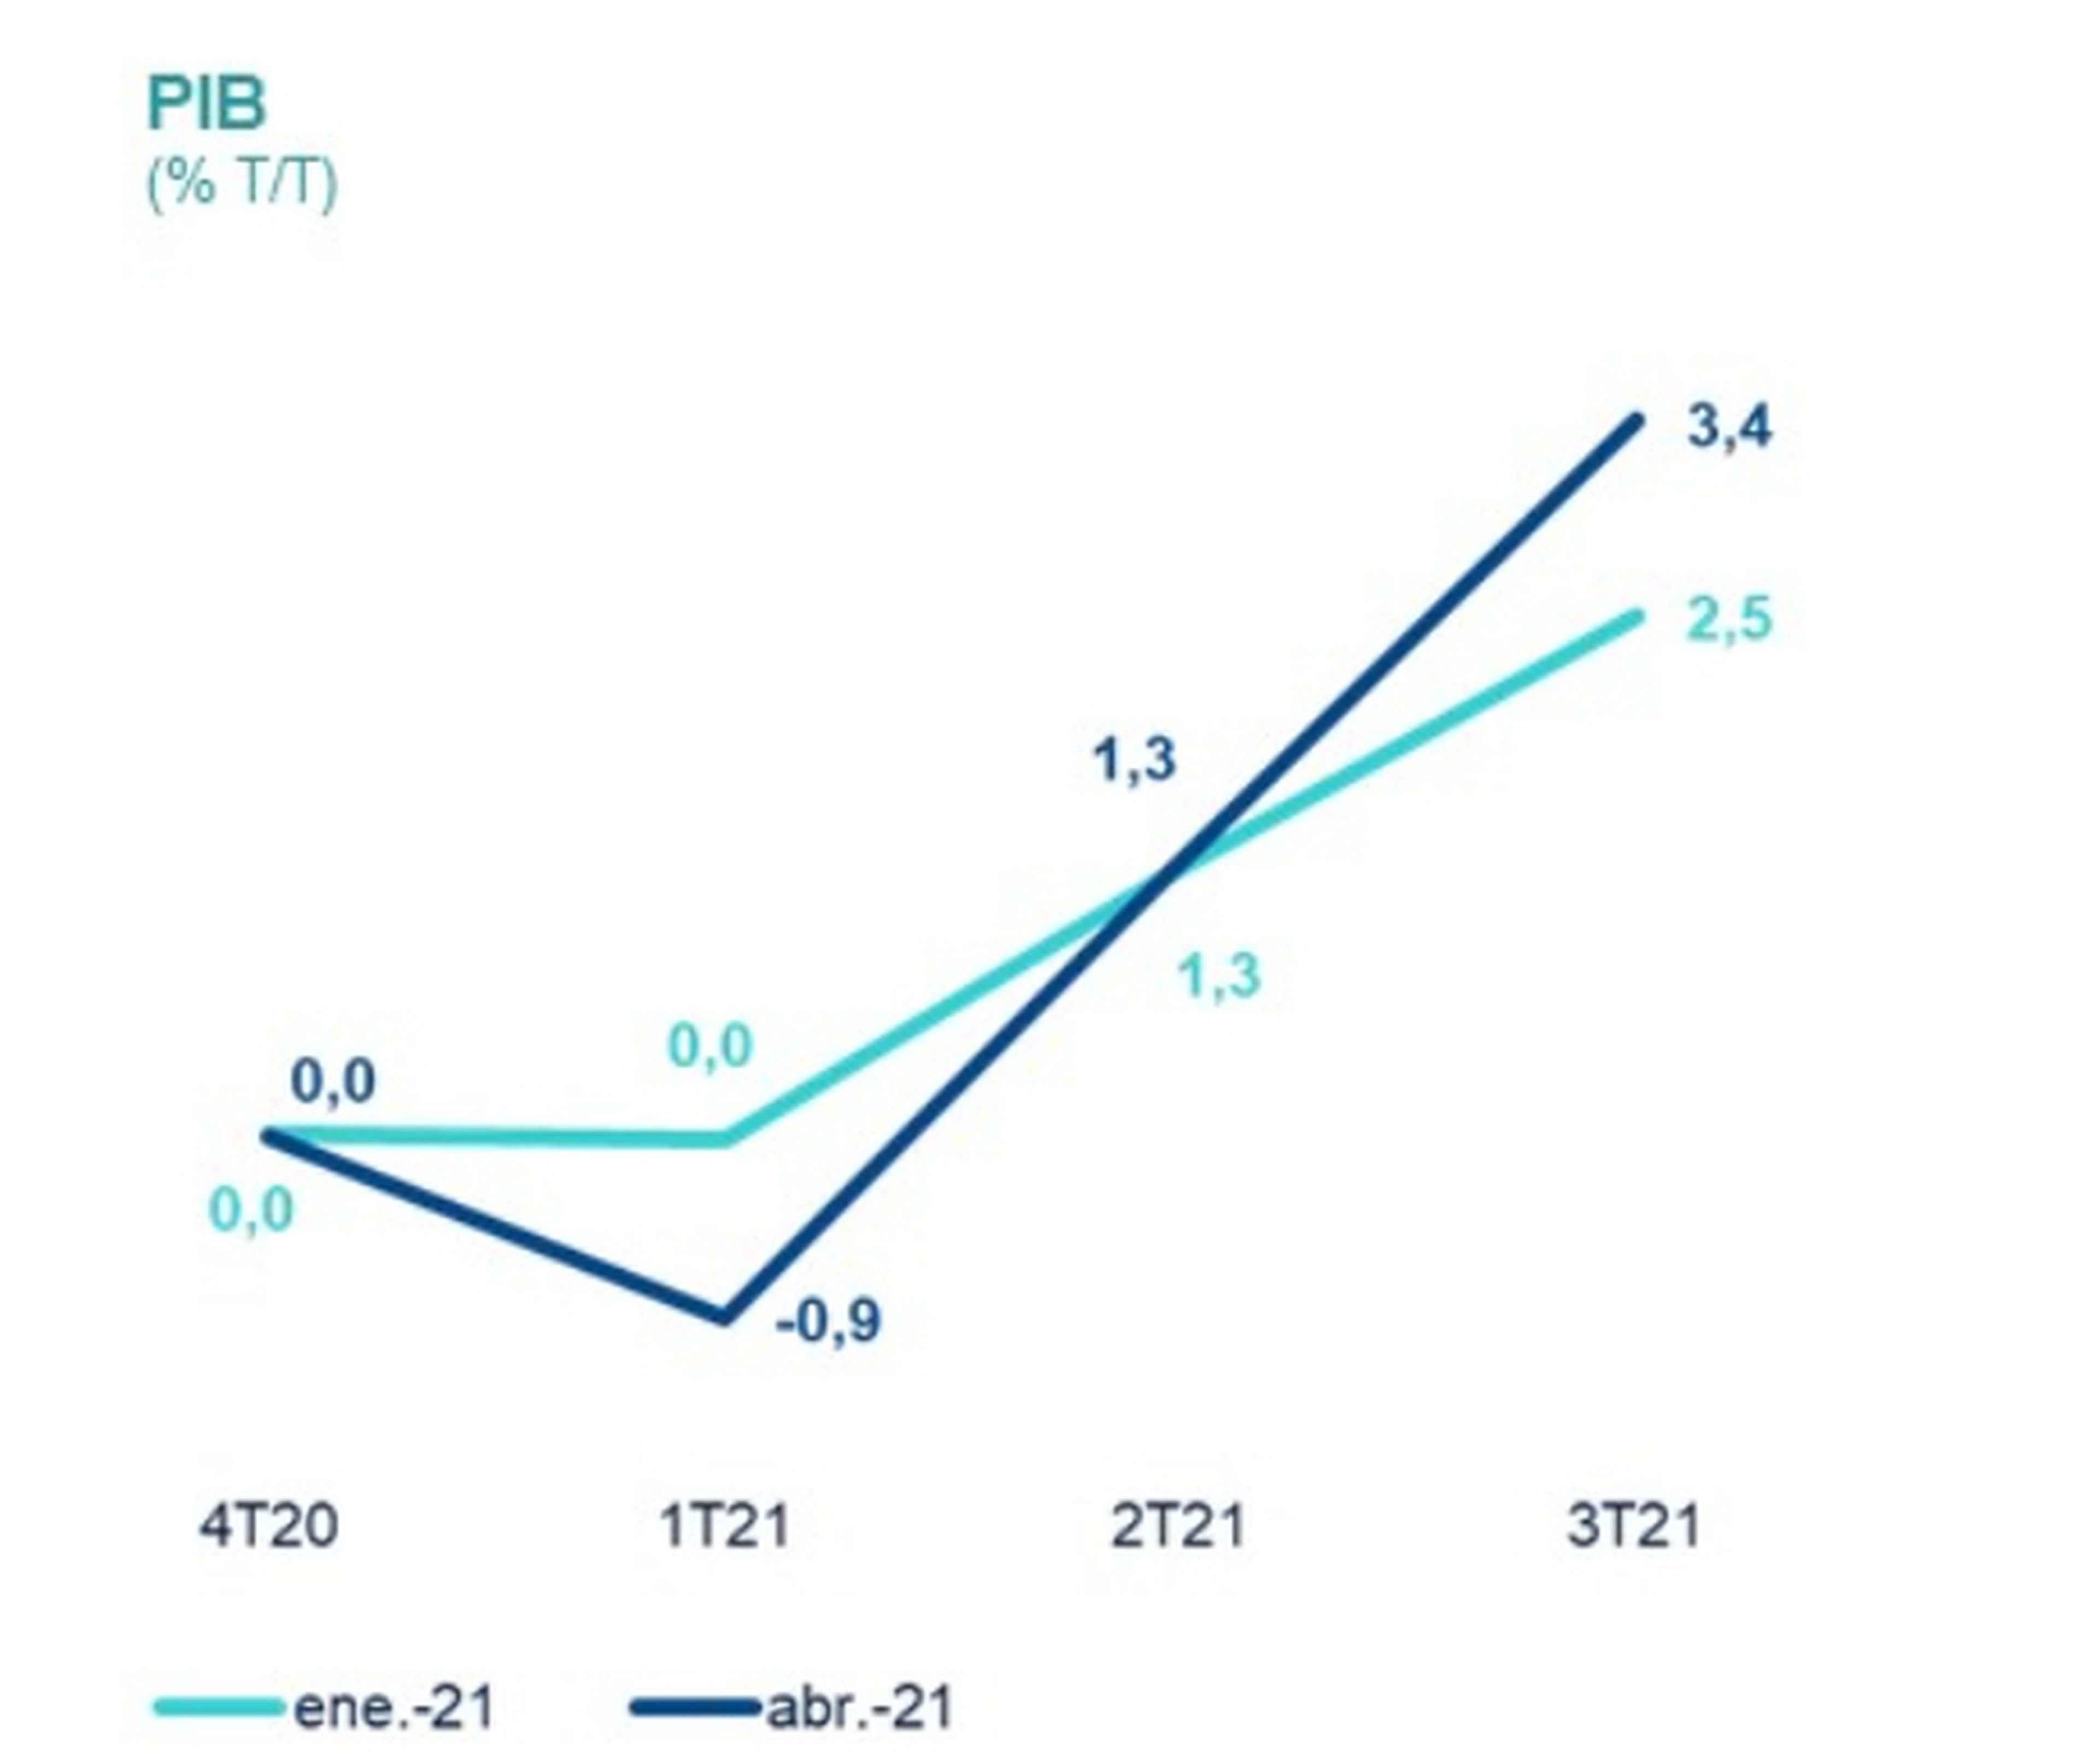 Previsión de evolución trimestral del PIB en España en 2021